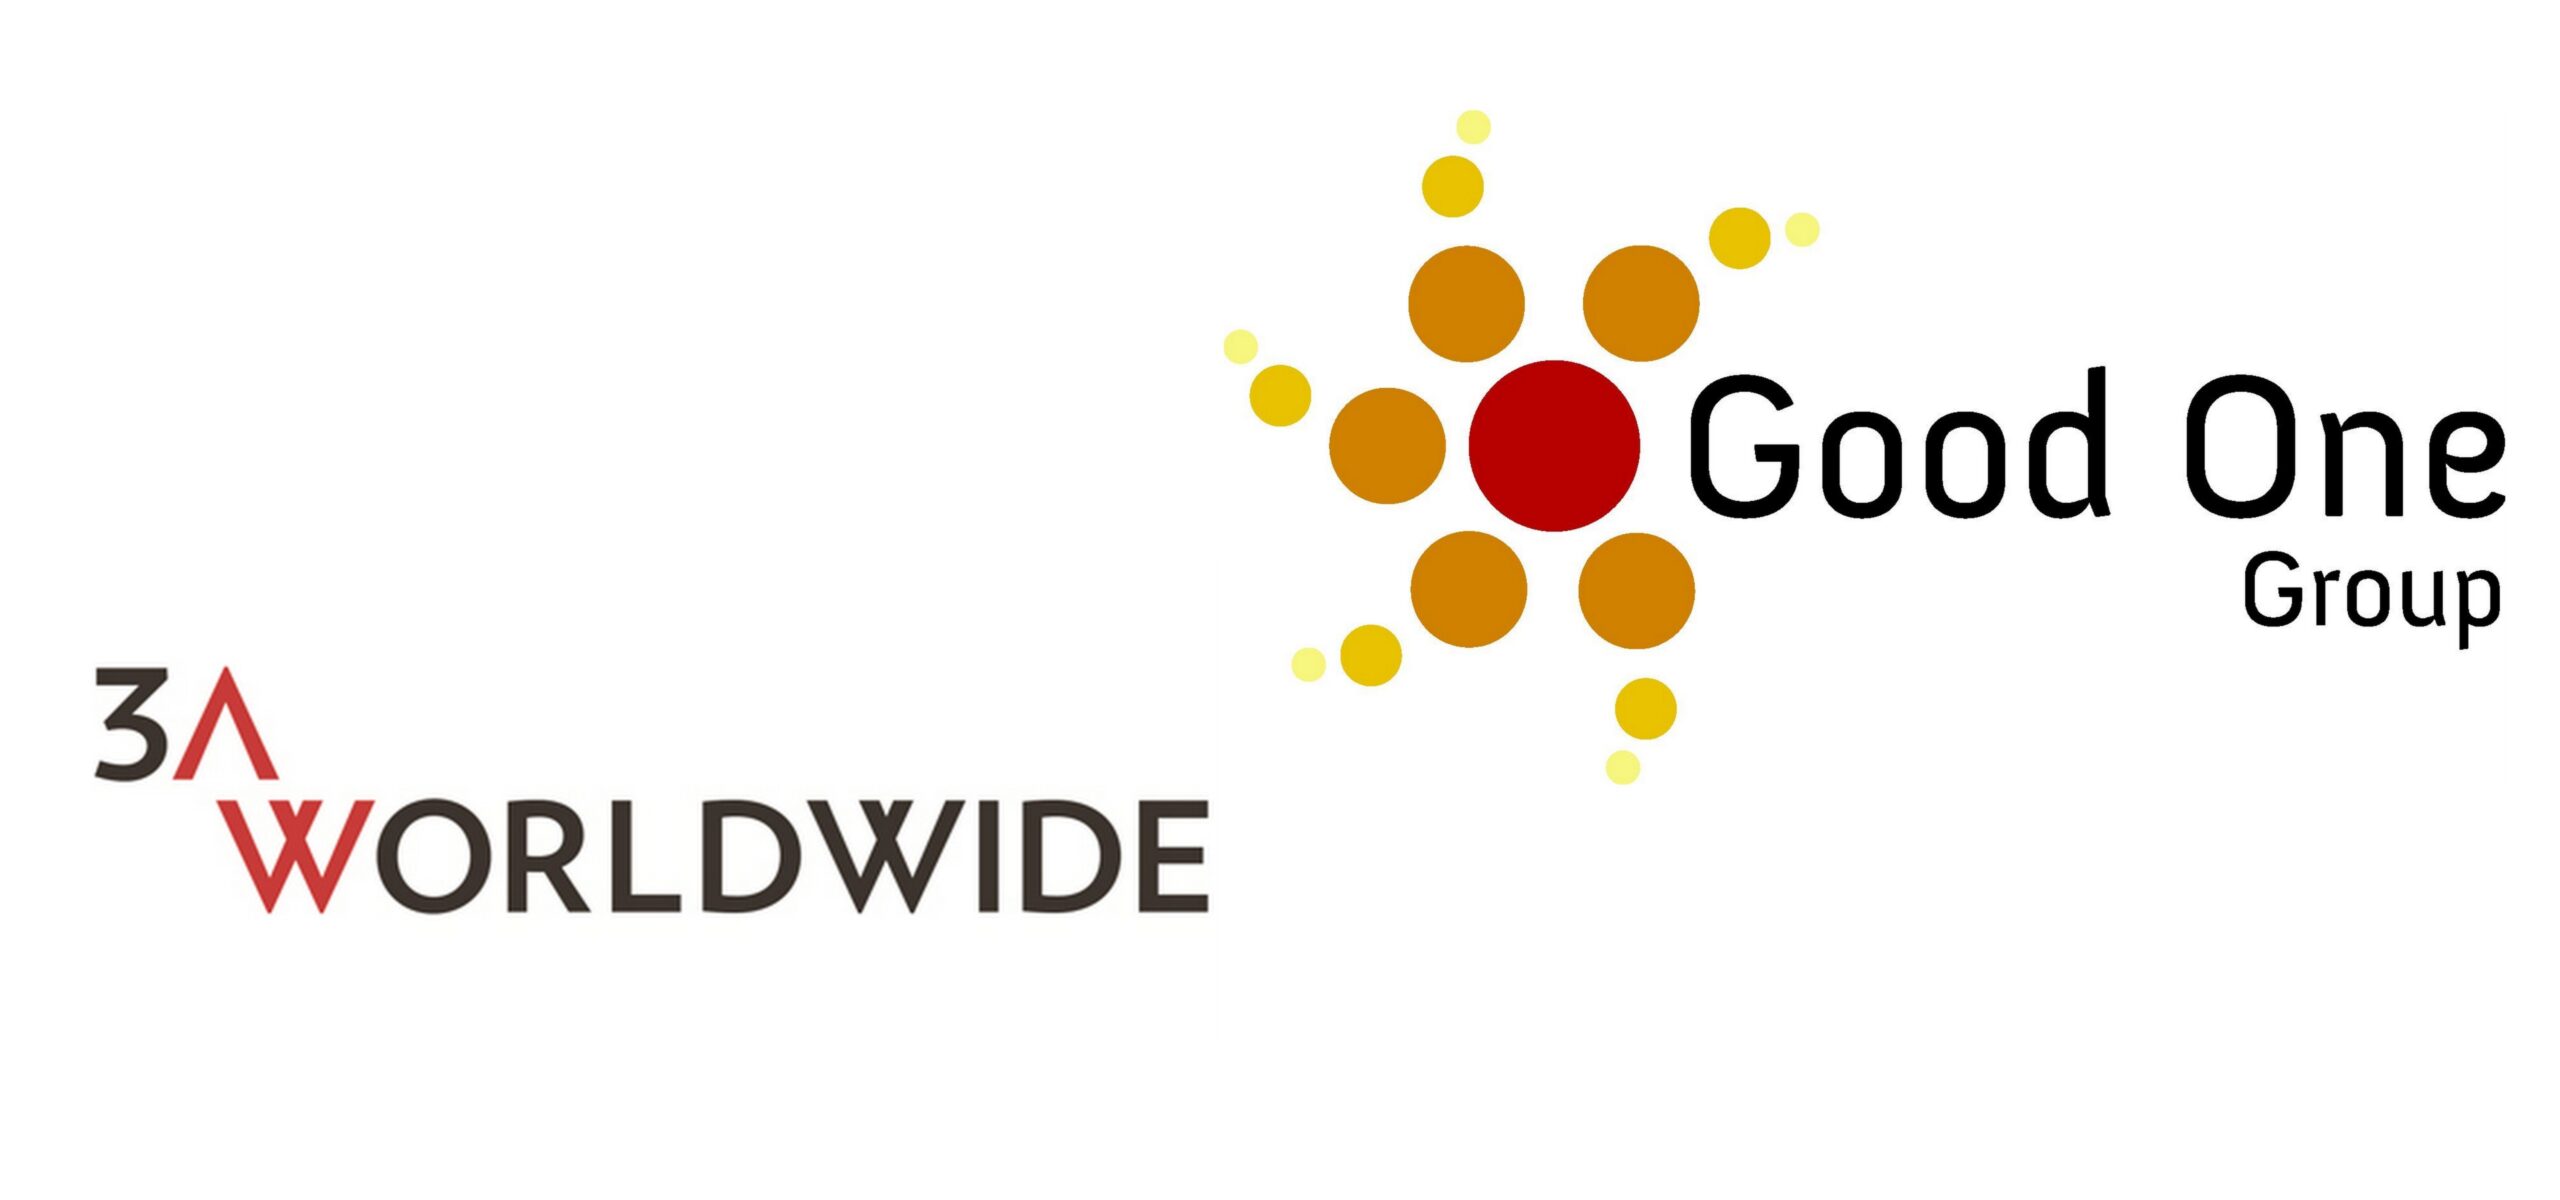 Good One Group dołącza do międzynarodowej sieci 3AWORLDWIDE Good One Group Mediarun Com Good One Group scaled